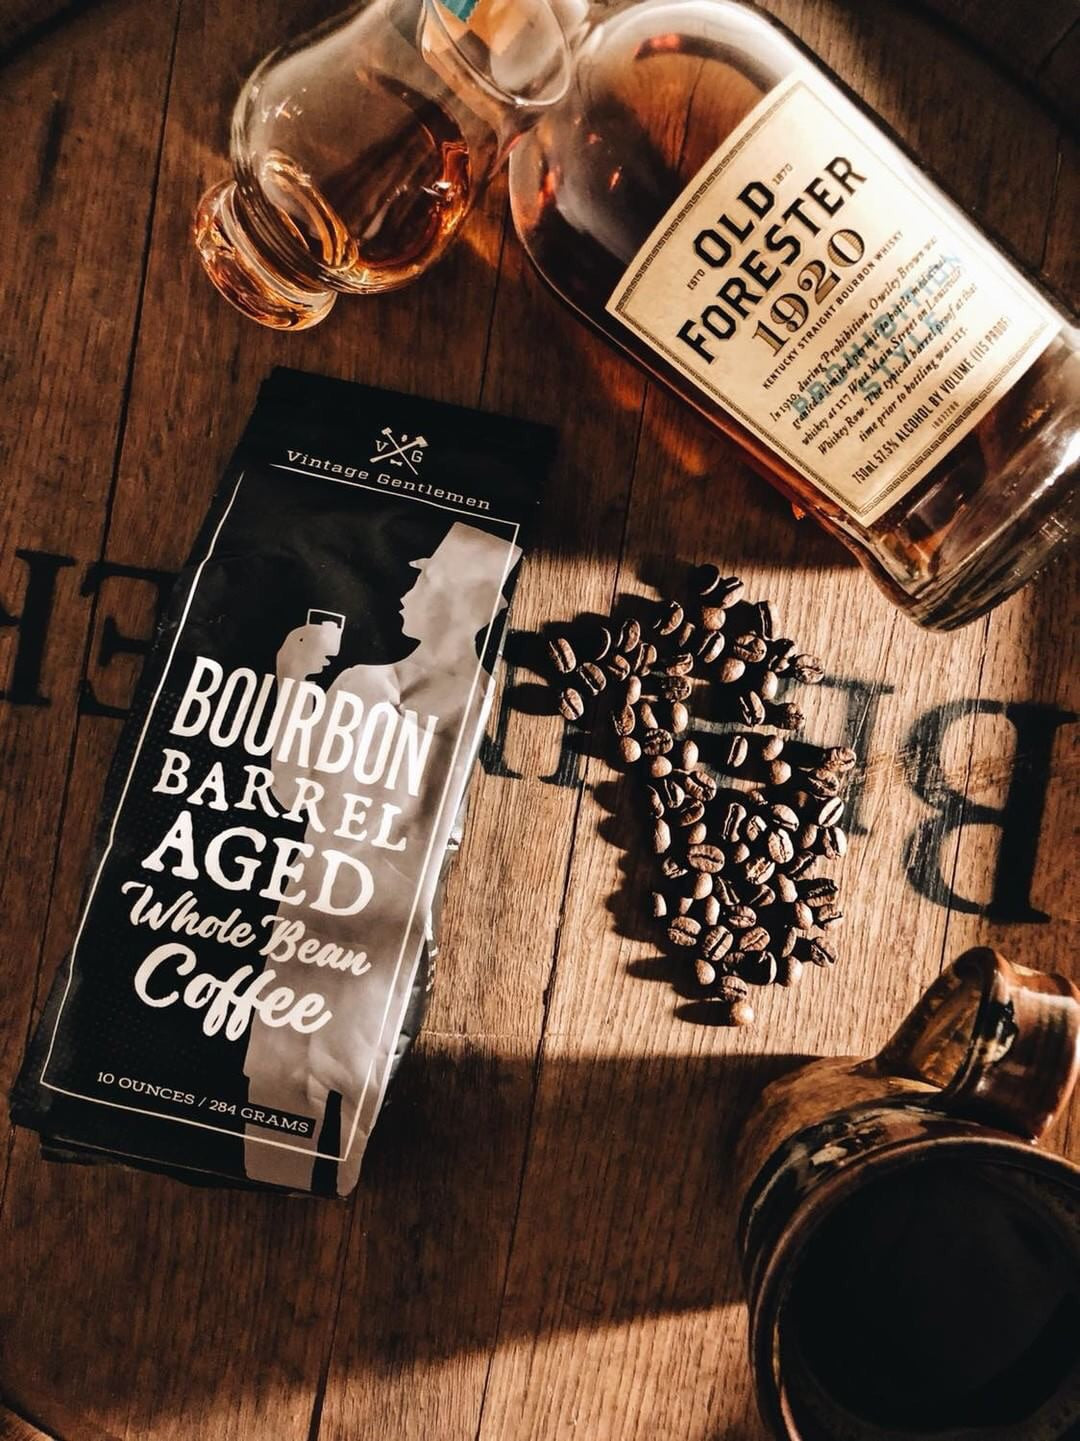 Bourbon Barrel Aged Coffee- 10oz Bag